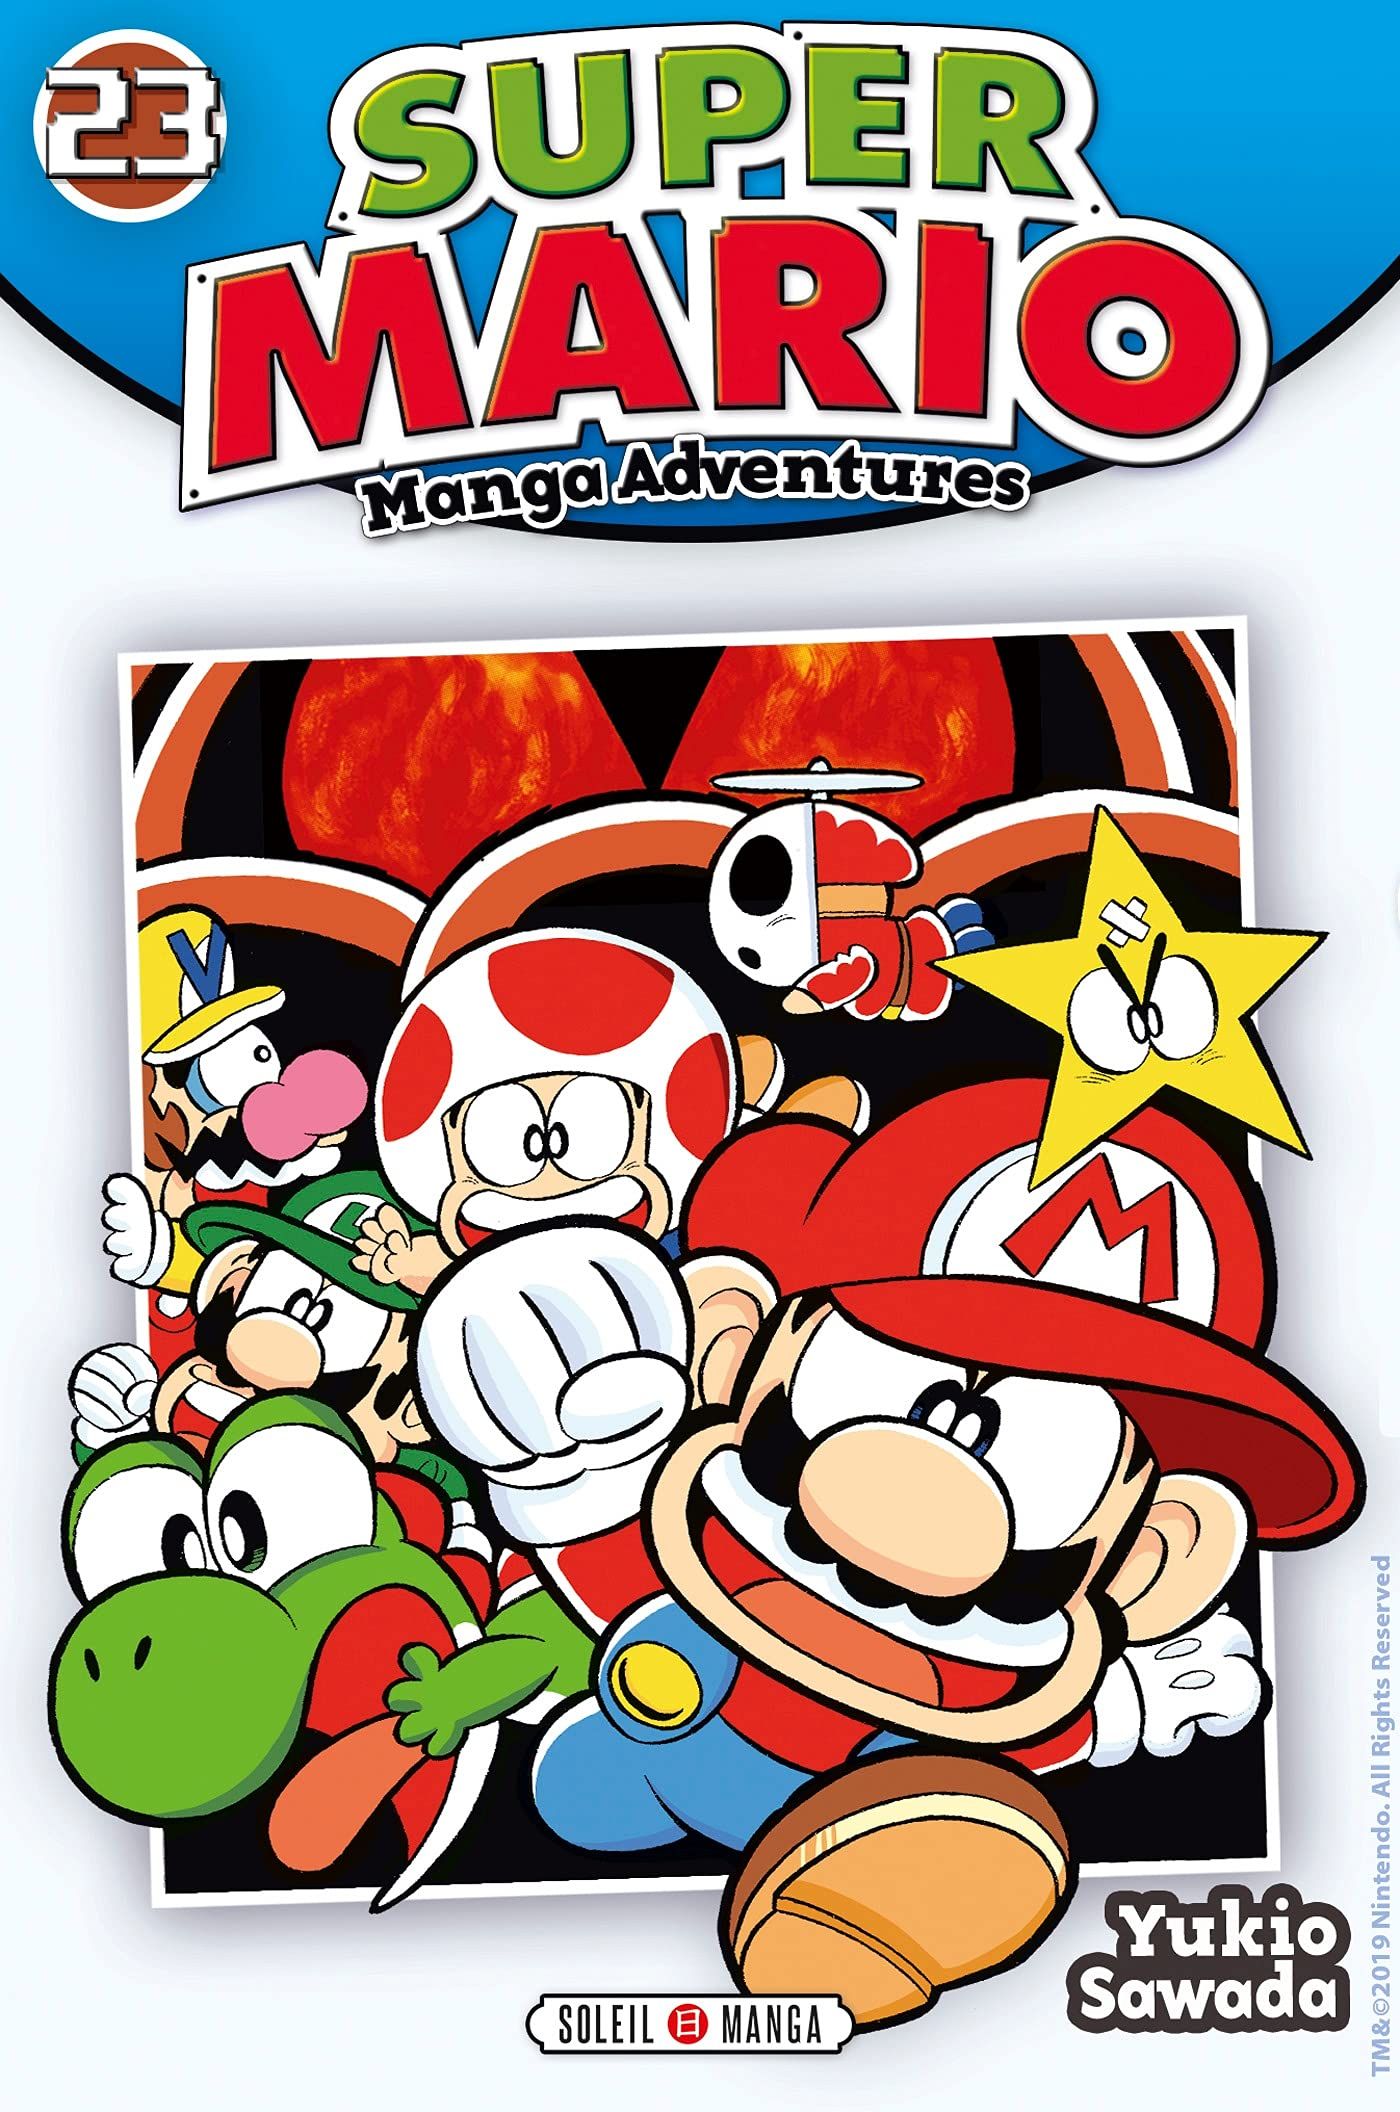 Super Mario - Manga adventures Vol.23